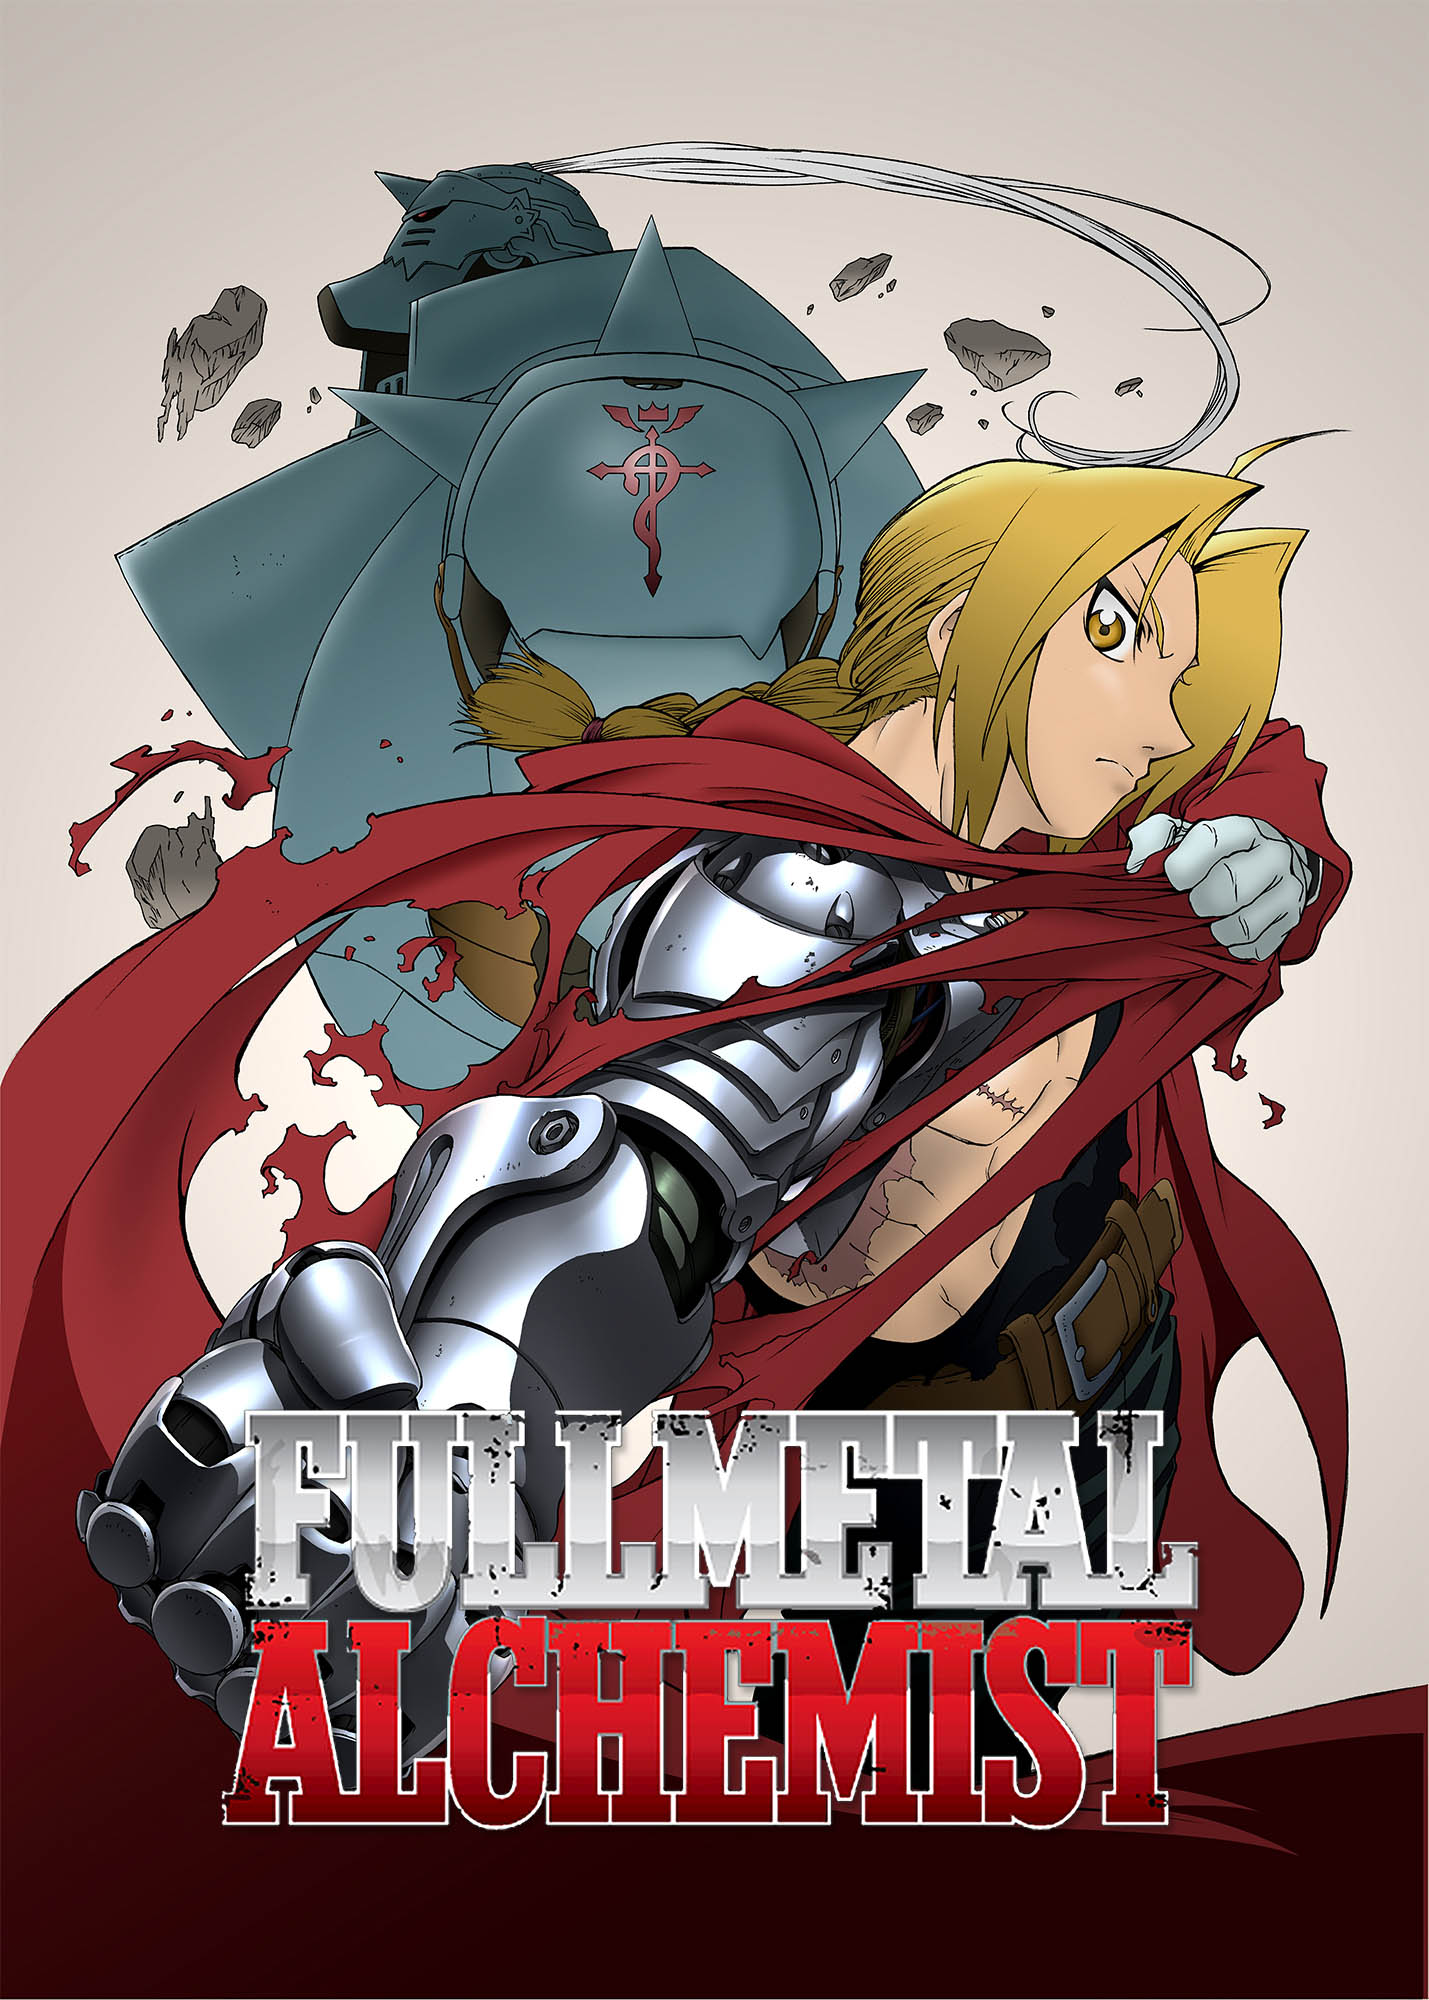 Fullmetal Alchemist: Brotherhood (Dub) Fullmetal Alchemist - Watch